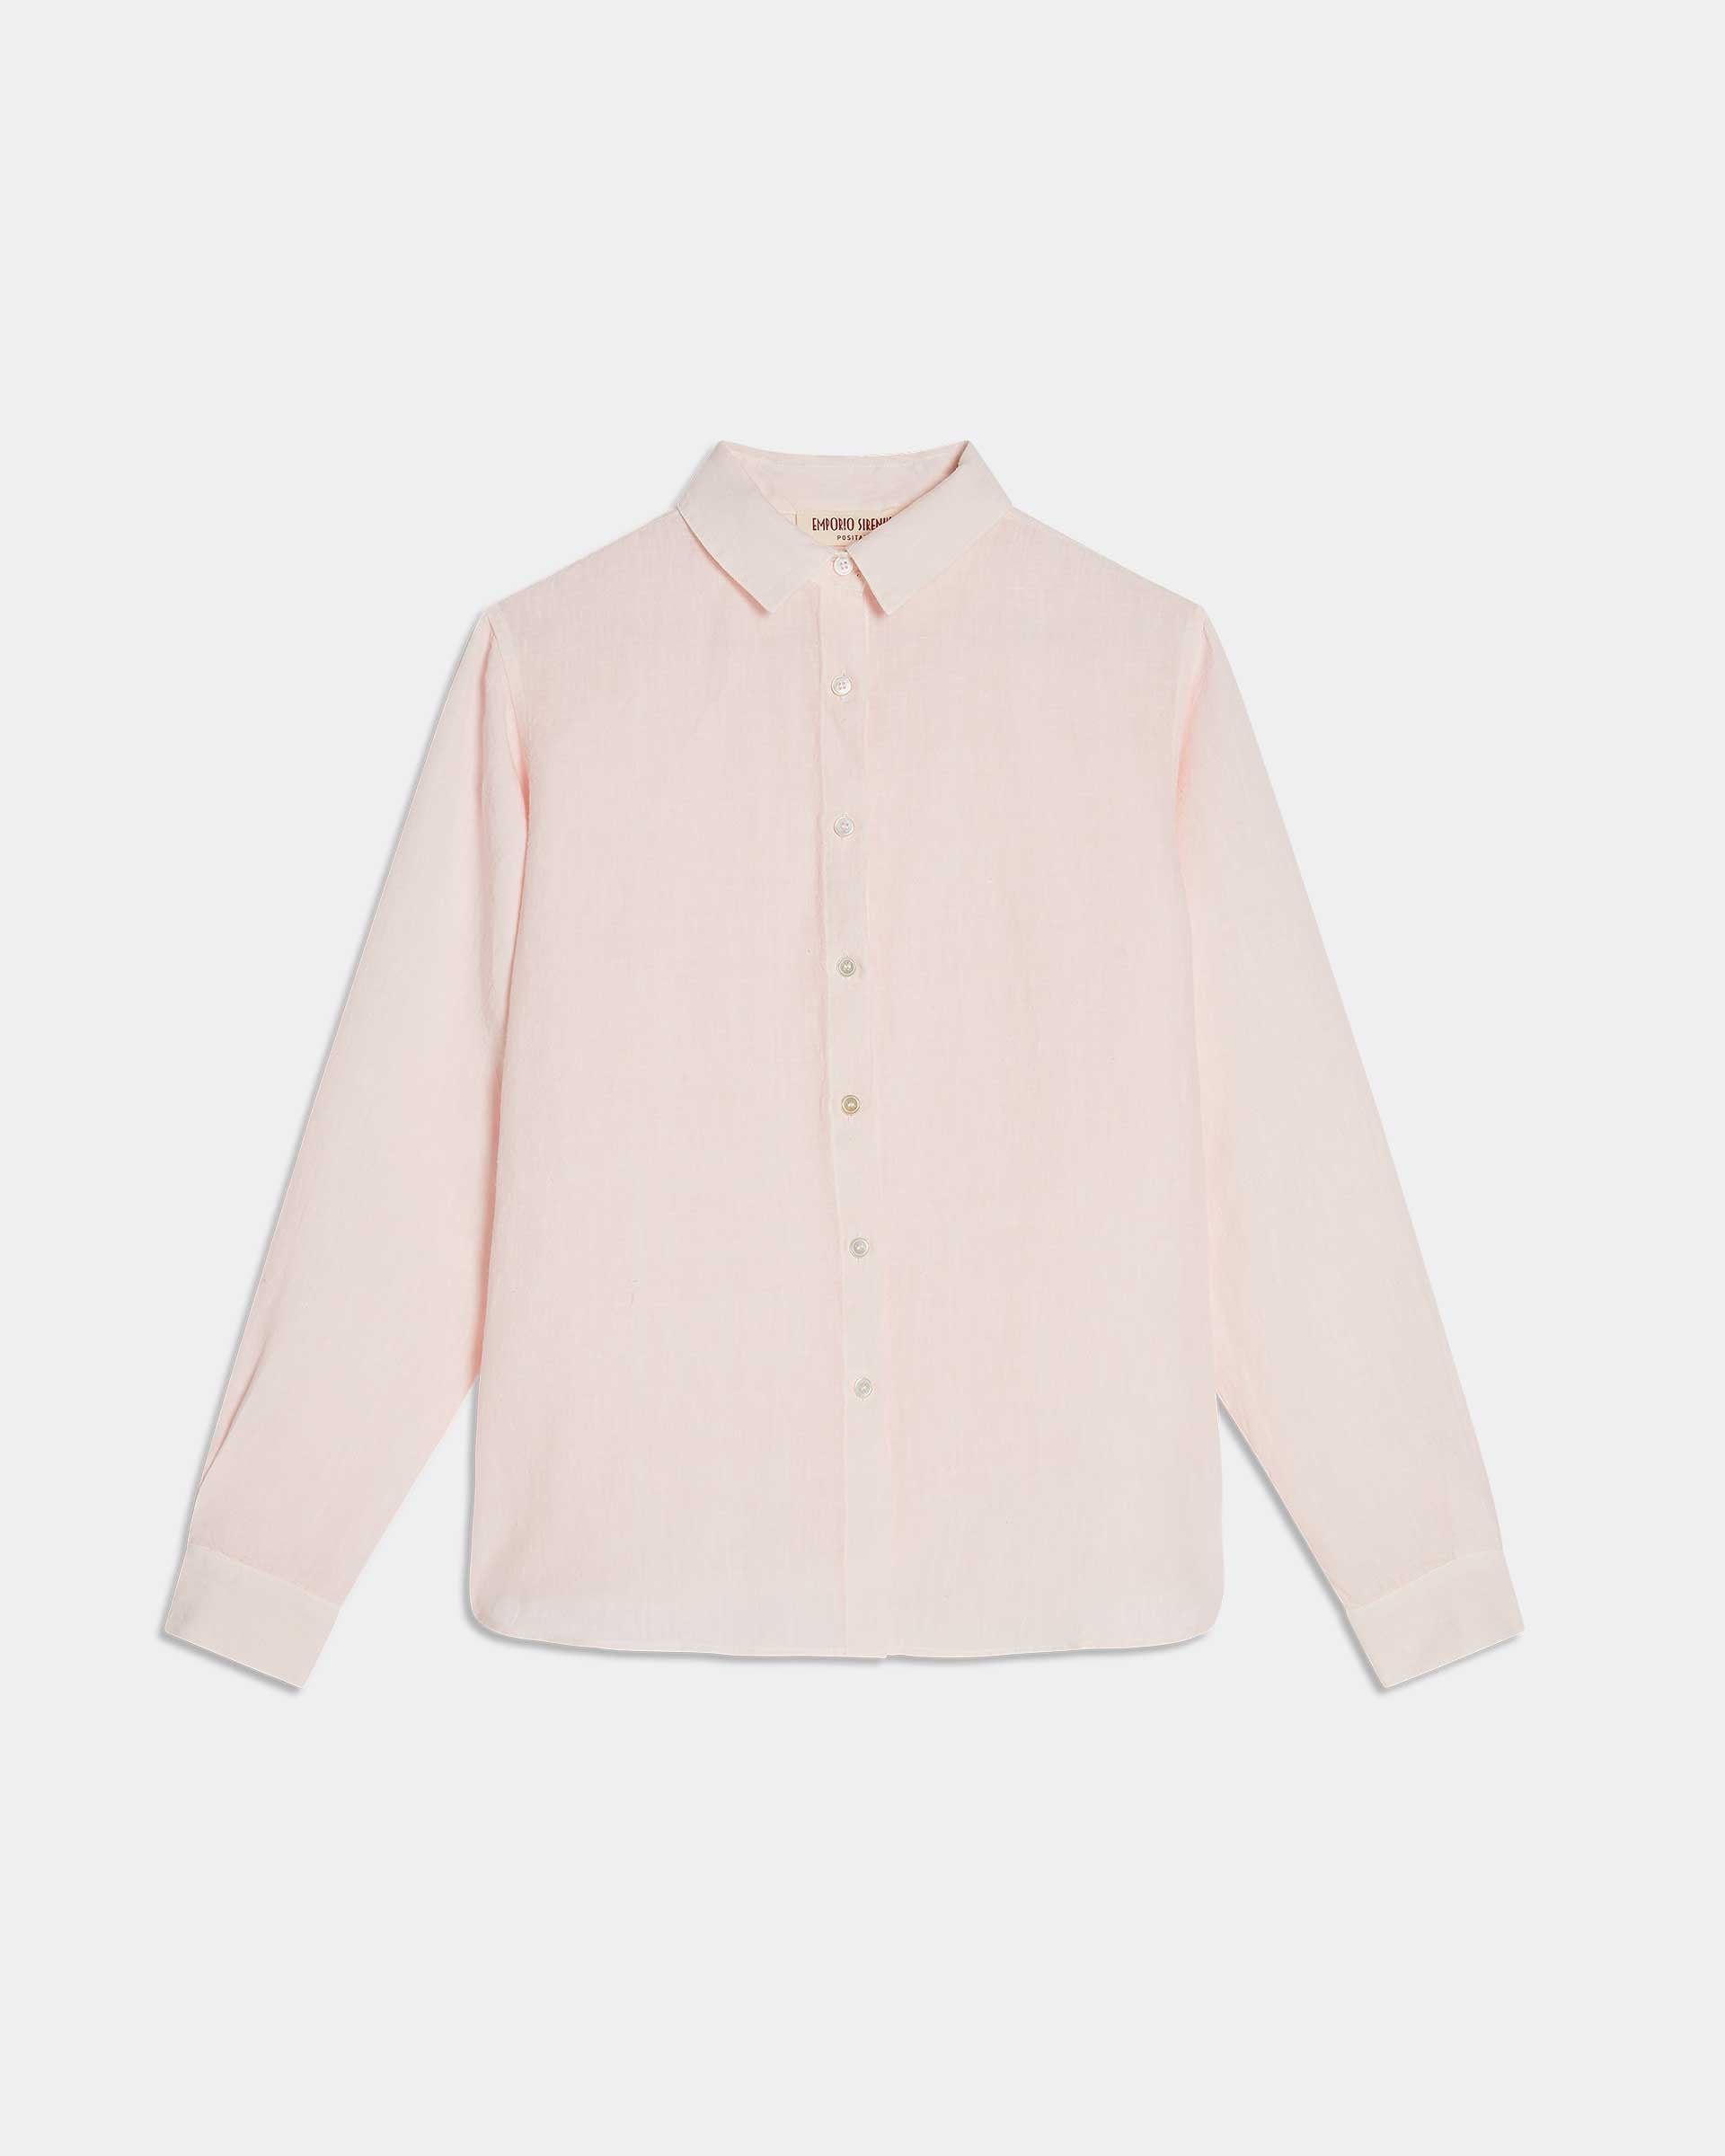 Light Wind Sparrow Shirt in Pink Linen